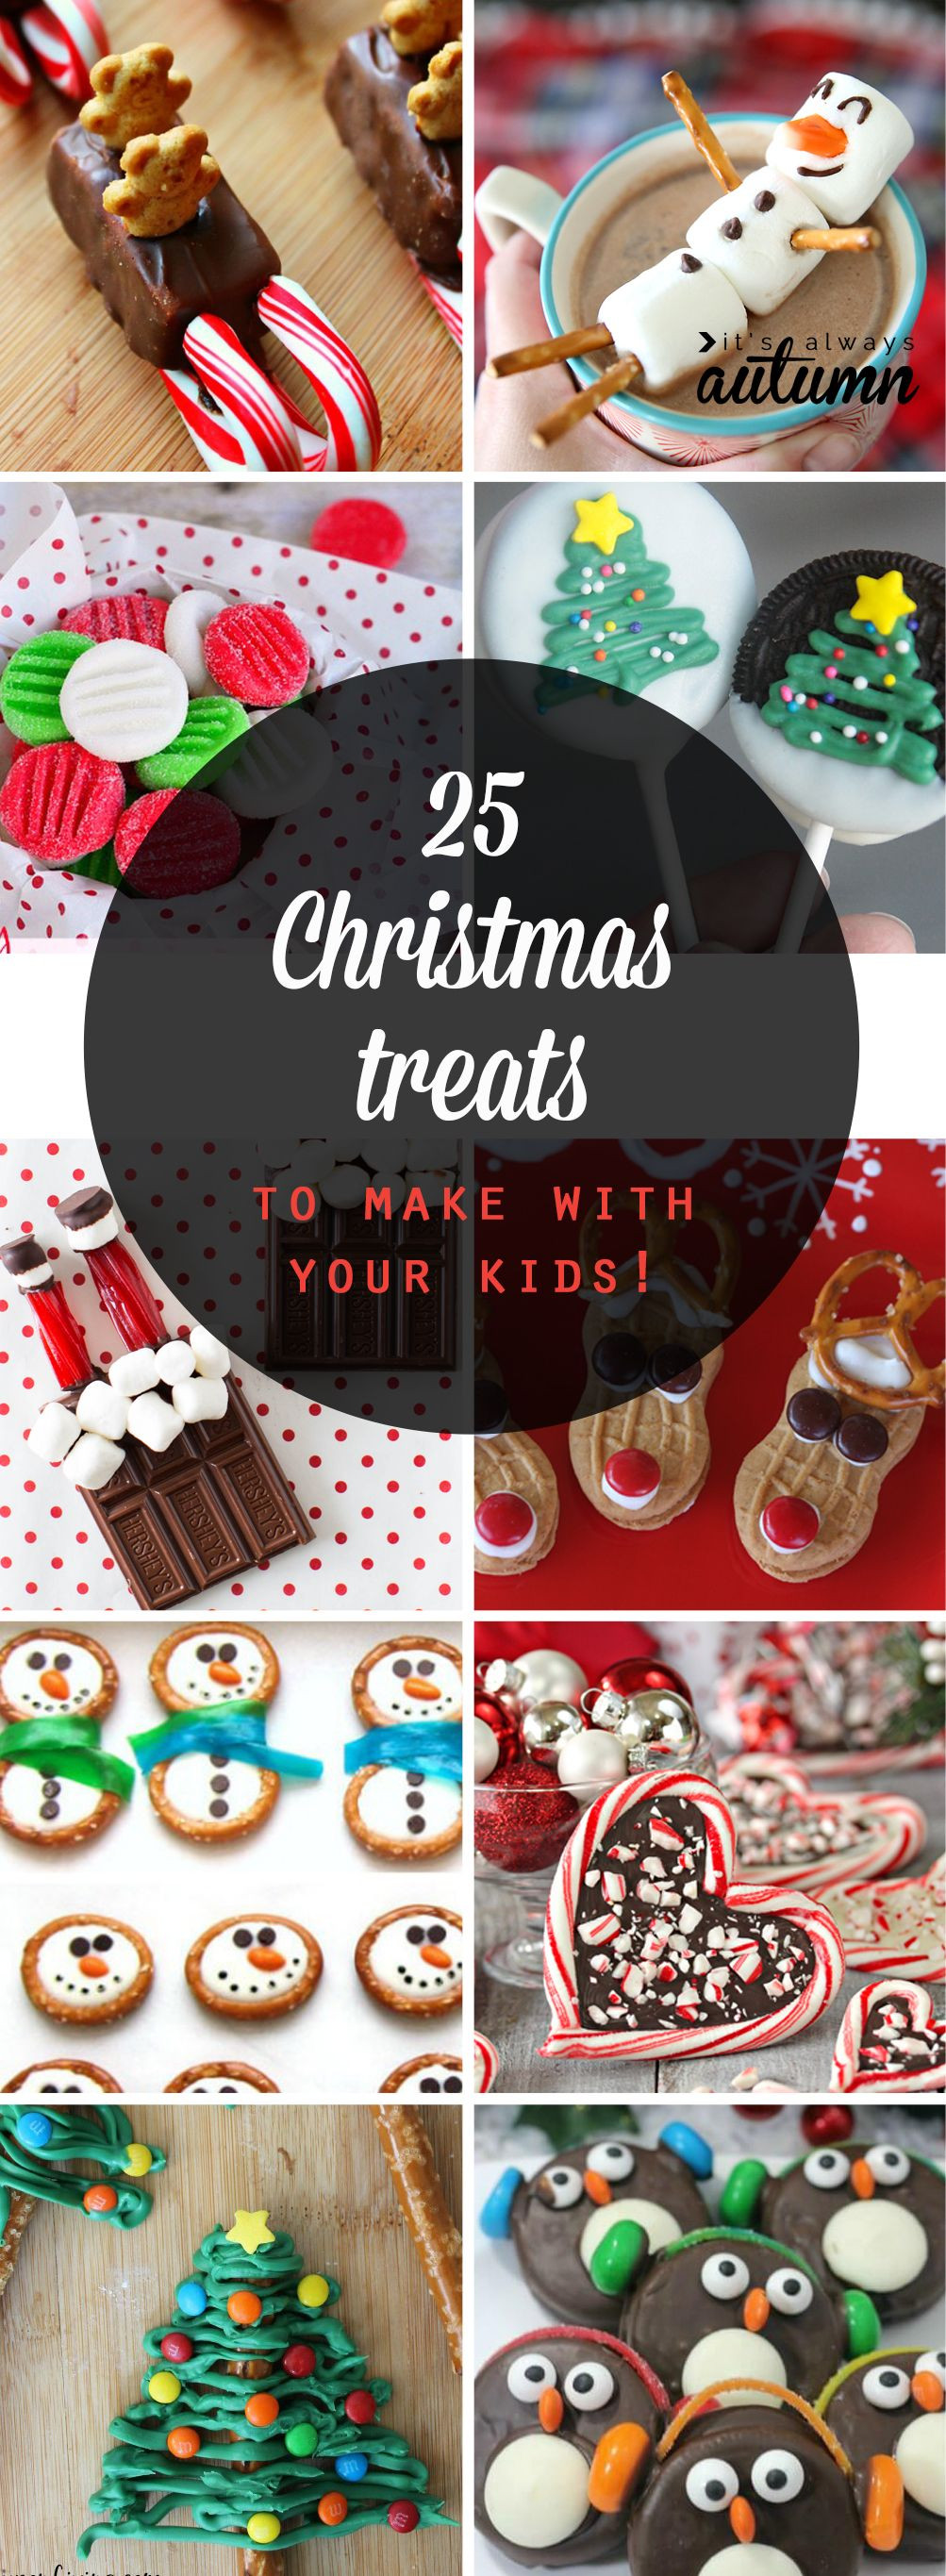 Make Christmas Candy
 25 adorable Christmas treats to make with your kids